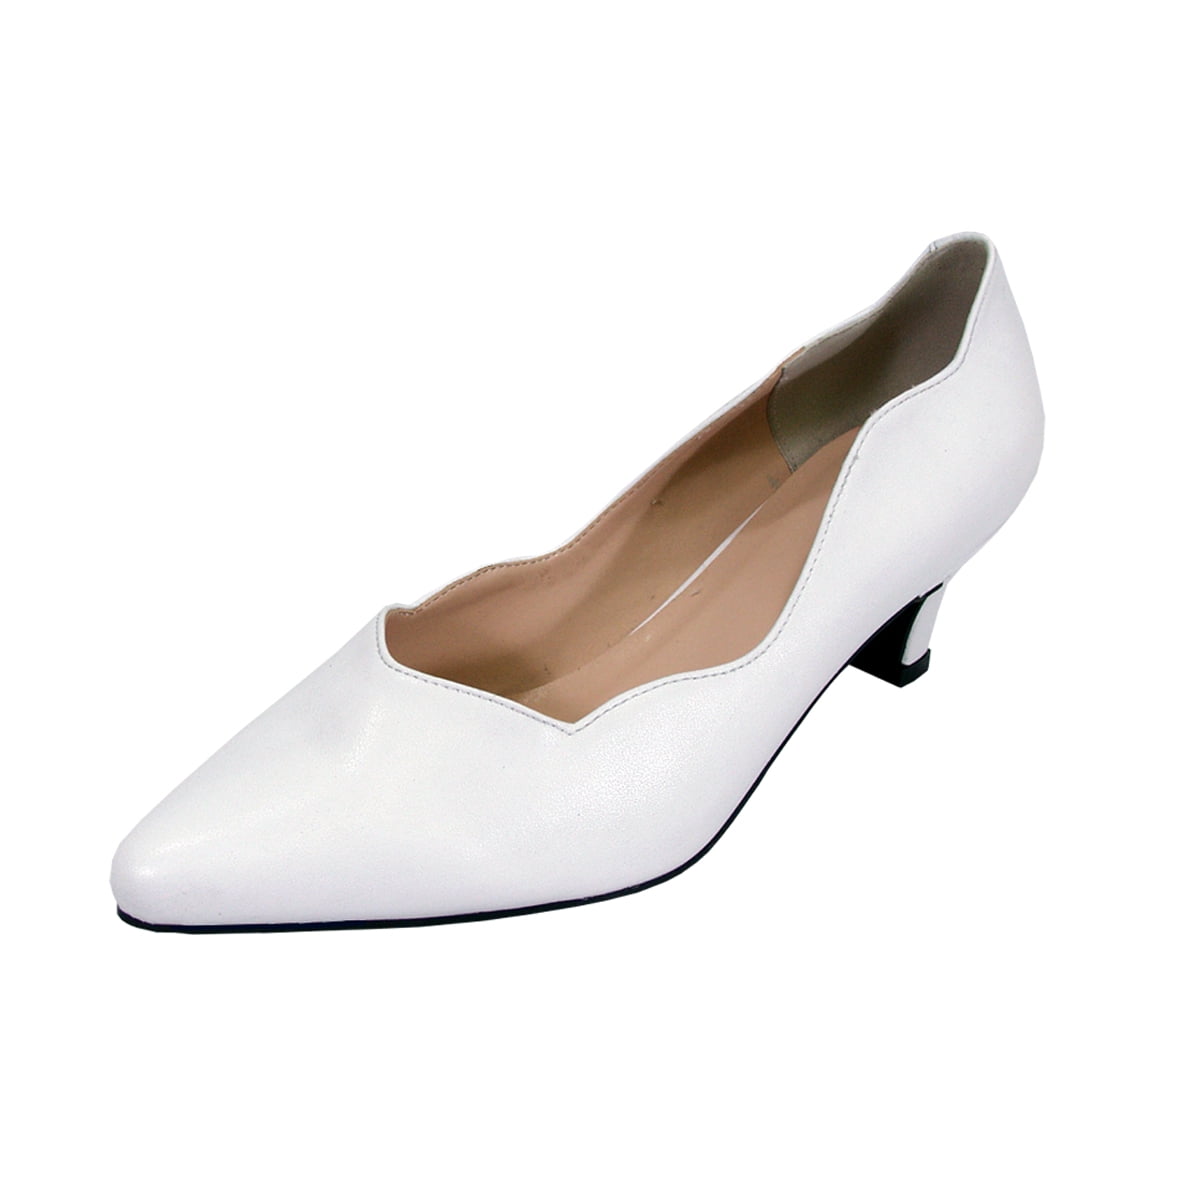 white dress shoes women